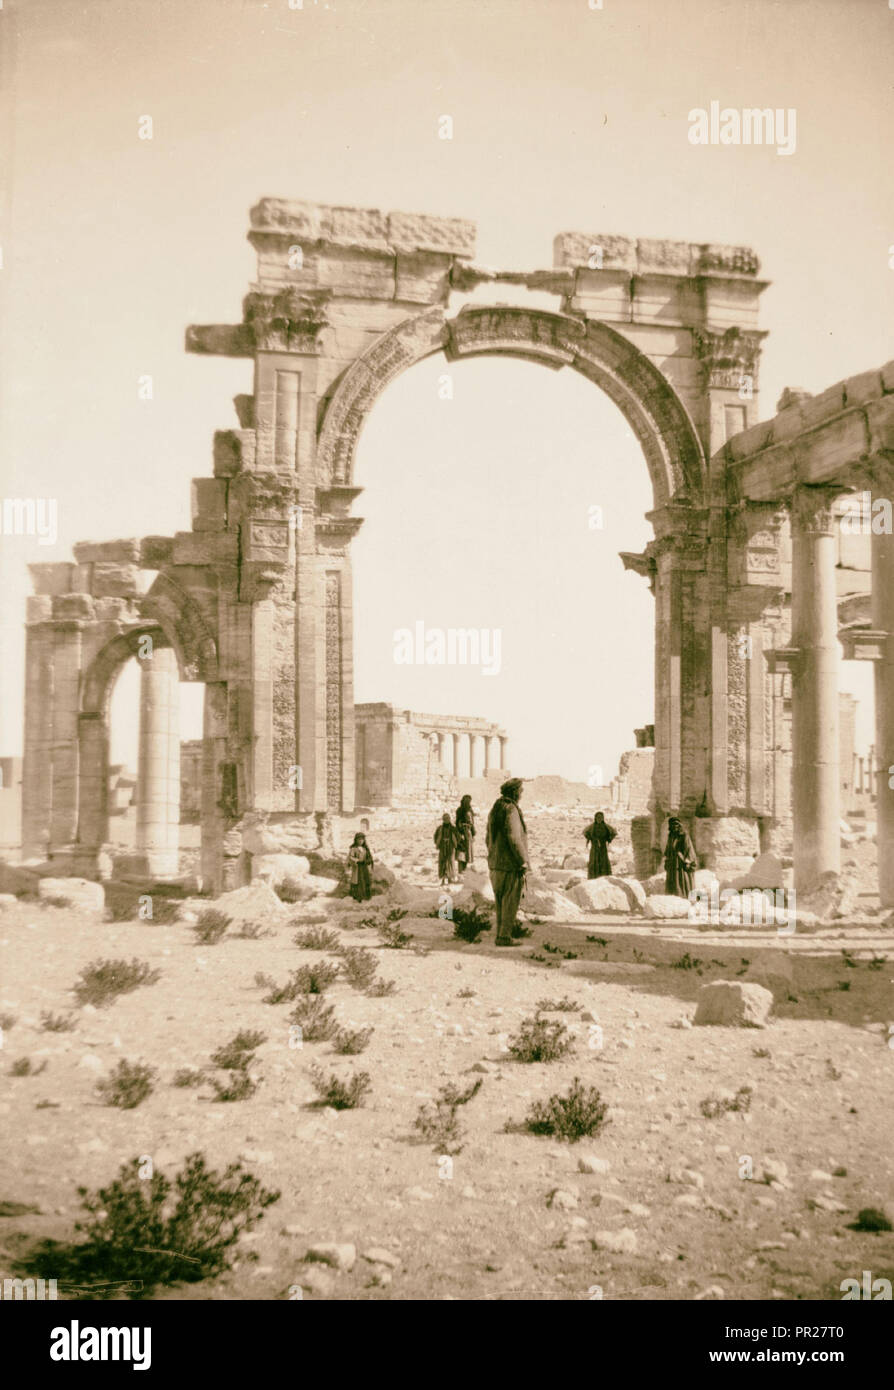 Palmyre (Tadmor). De Triomphe, partie centrale. 1900, Syrie, Tadmor Banque D'Images